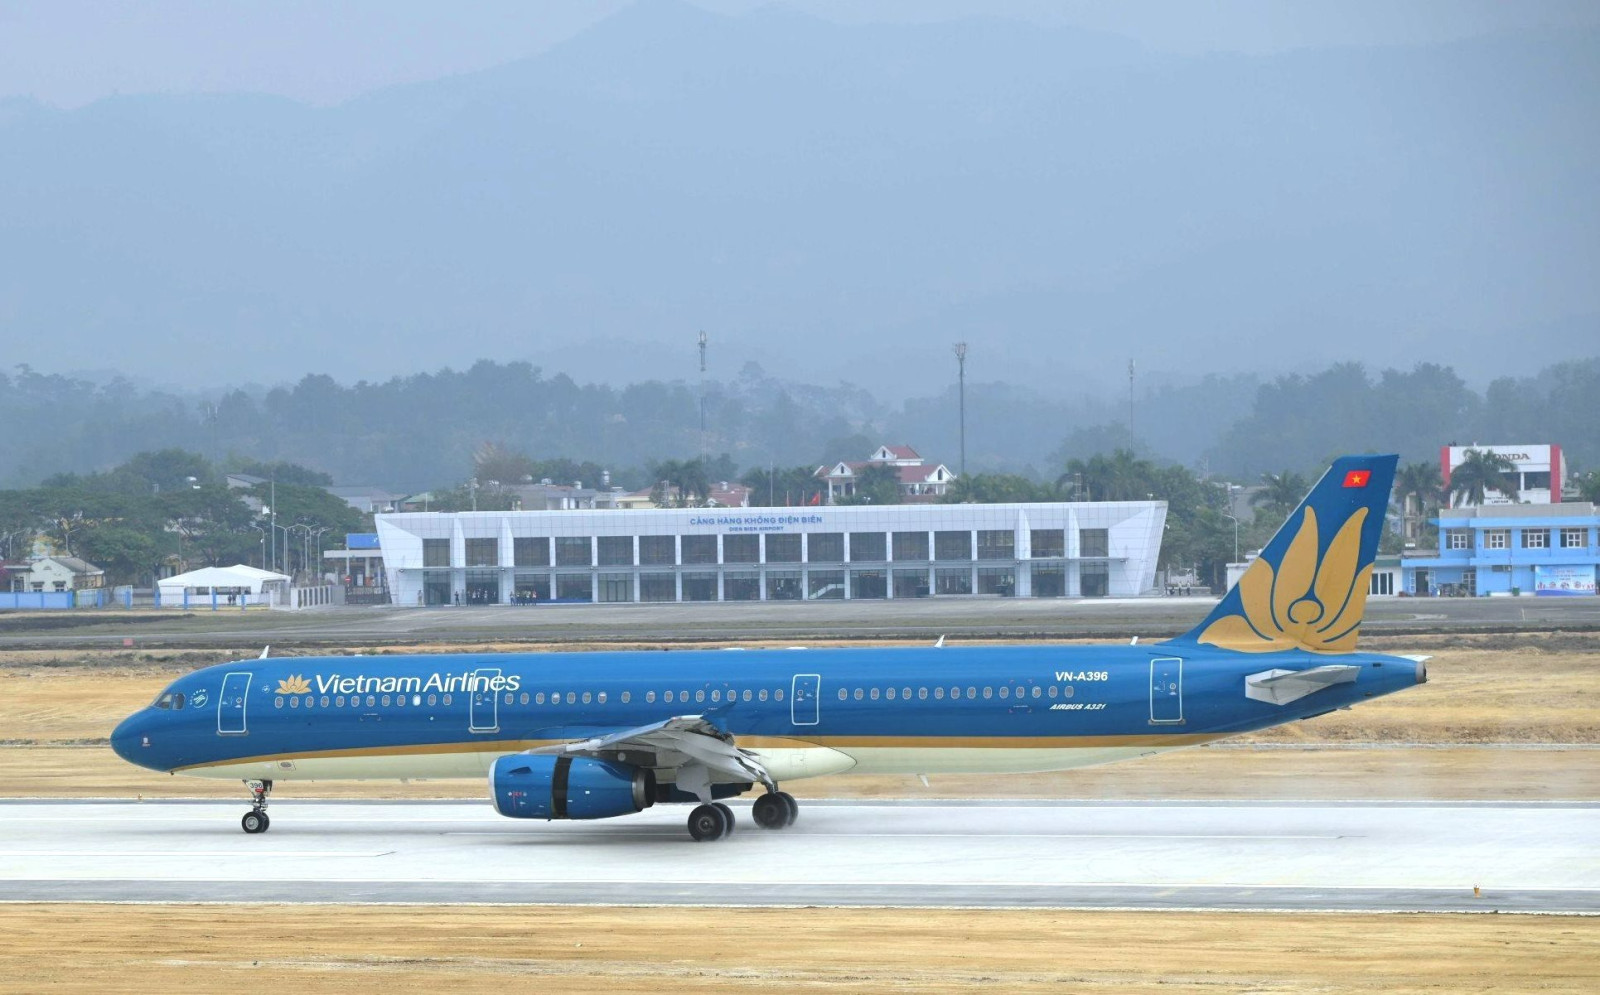 Hàng loạt chuyến bay đi/đến Điện Biên Phủ bị hủy do chất lượng không khí xấu - Ảnh 1